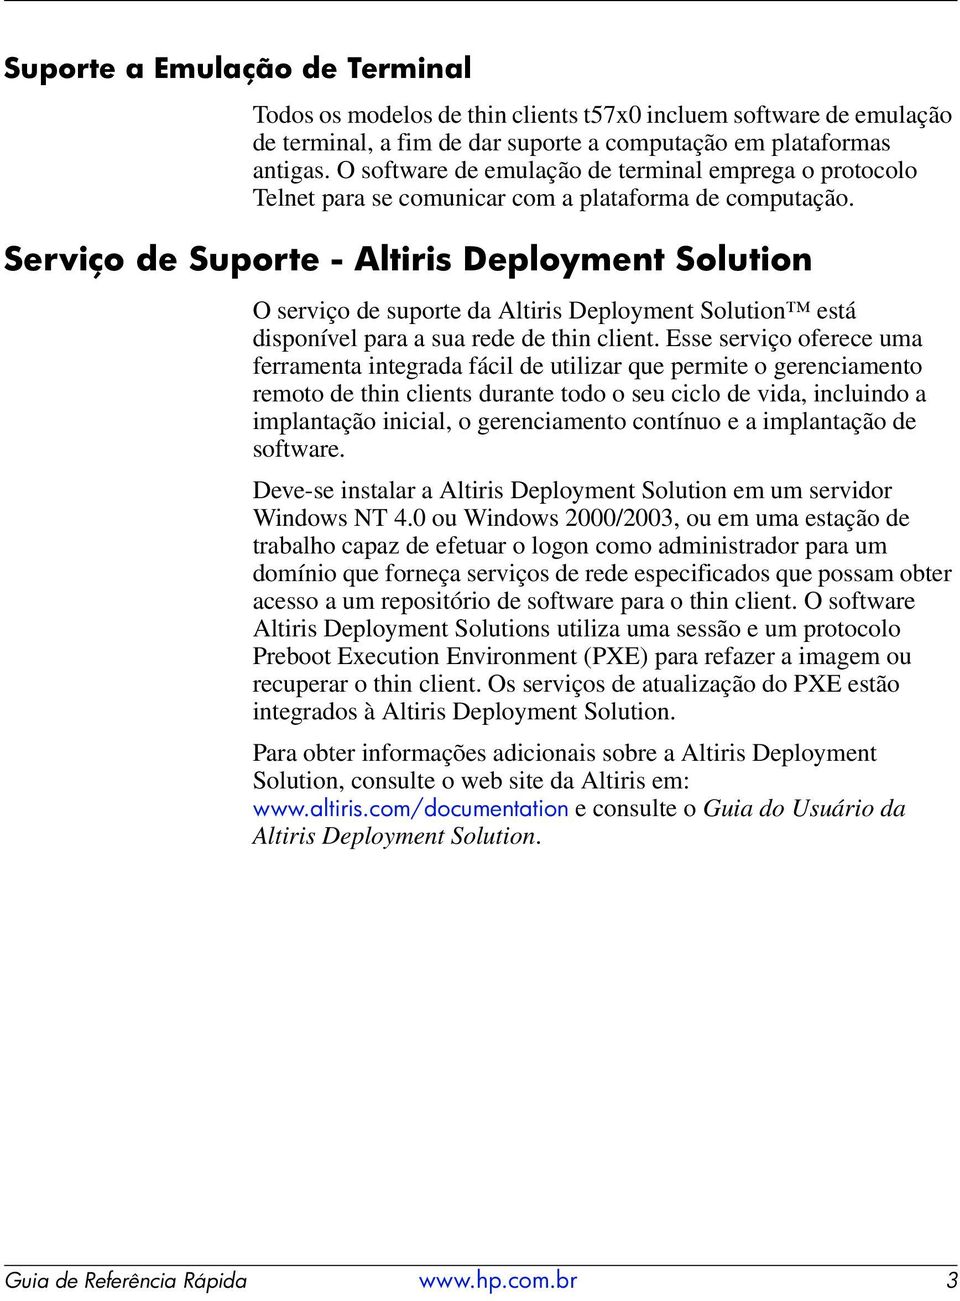 Serviço de Suporte - Altiris Deployment Solution O serviço de suporte da Altiris Deployment Solution está disponível para a sua rede de thin client.